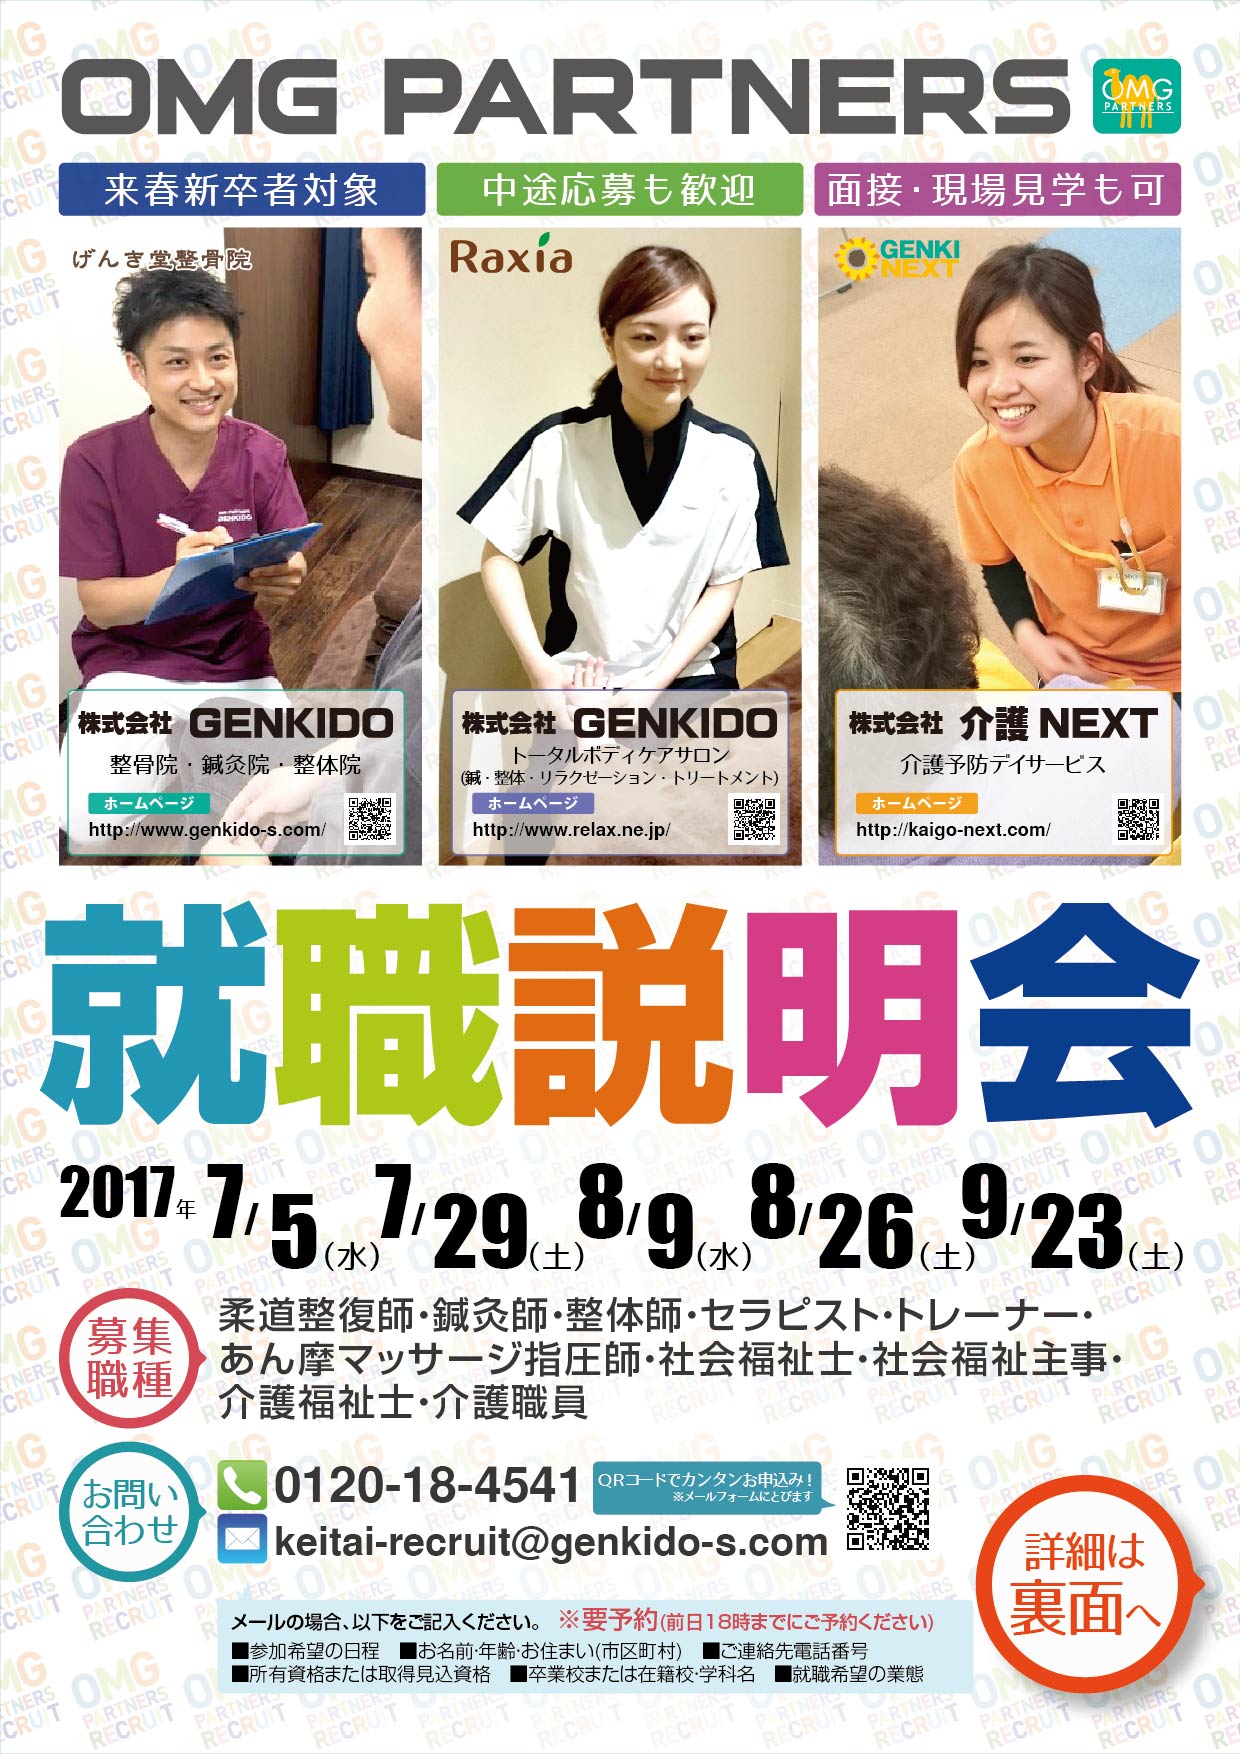 【東京7月・8月・9月】OMGパートナーズ就職説明会開催